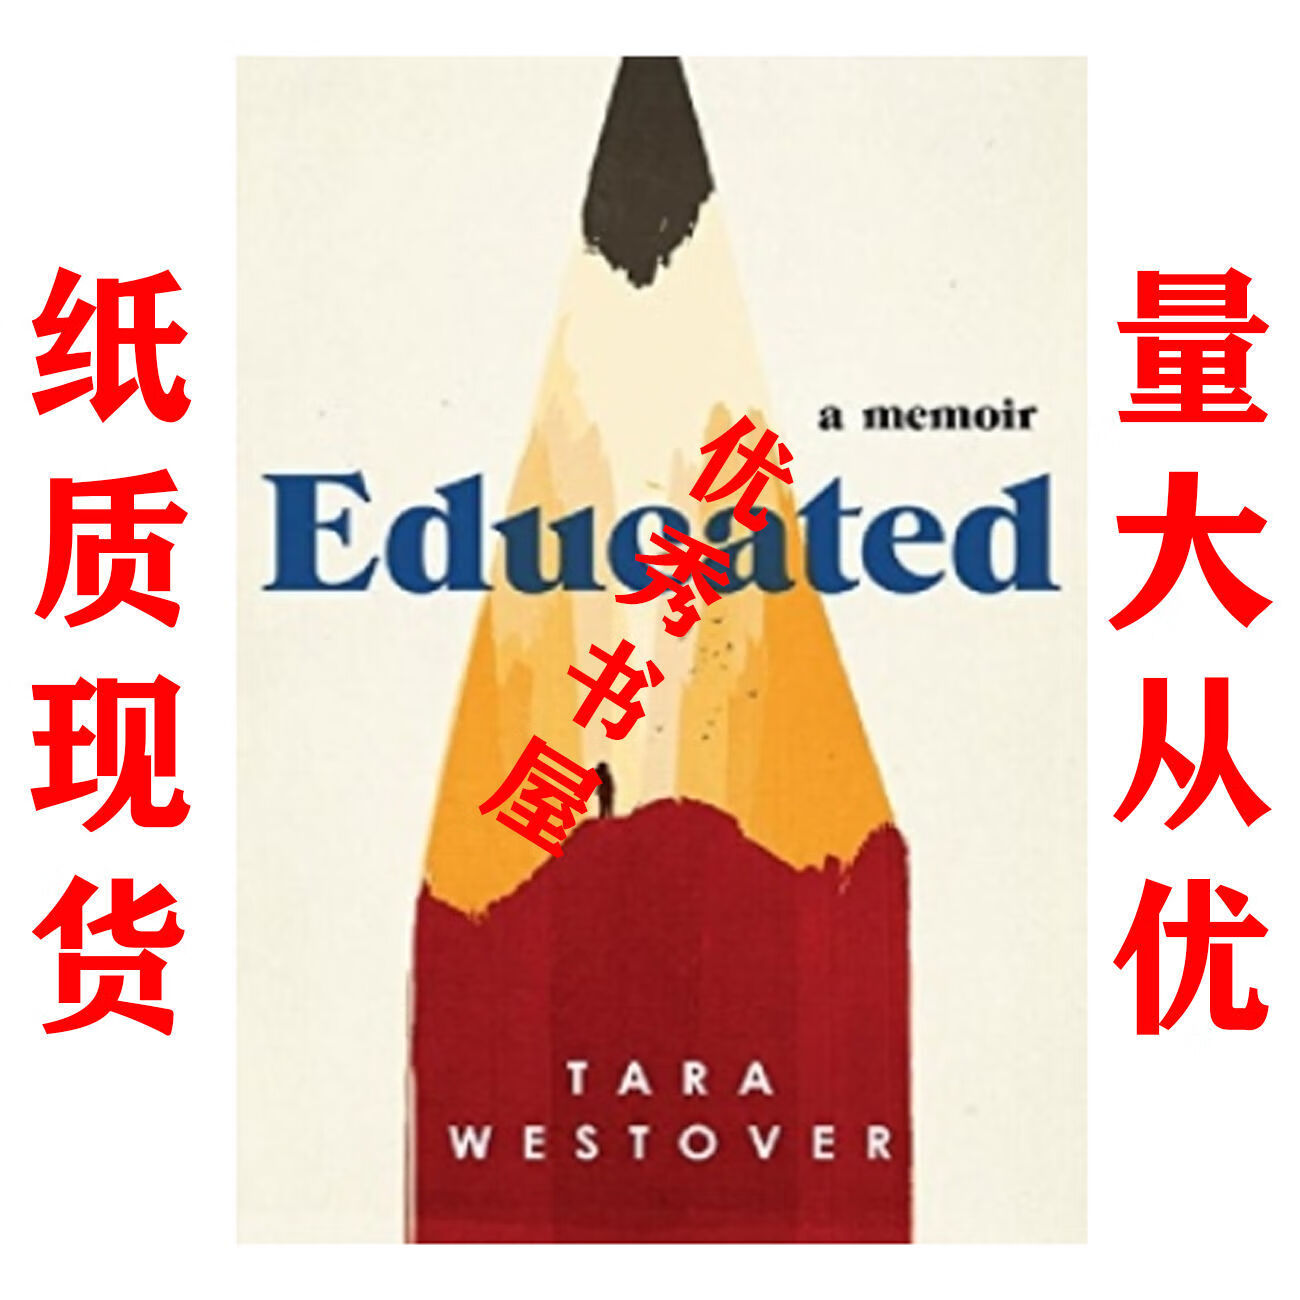 纸质现货Educated - Tara Westover pdf格式下载